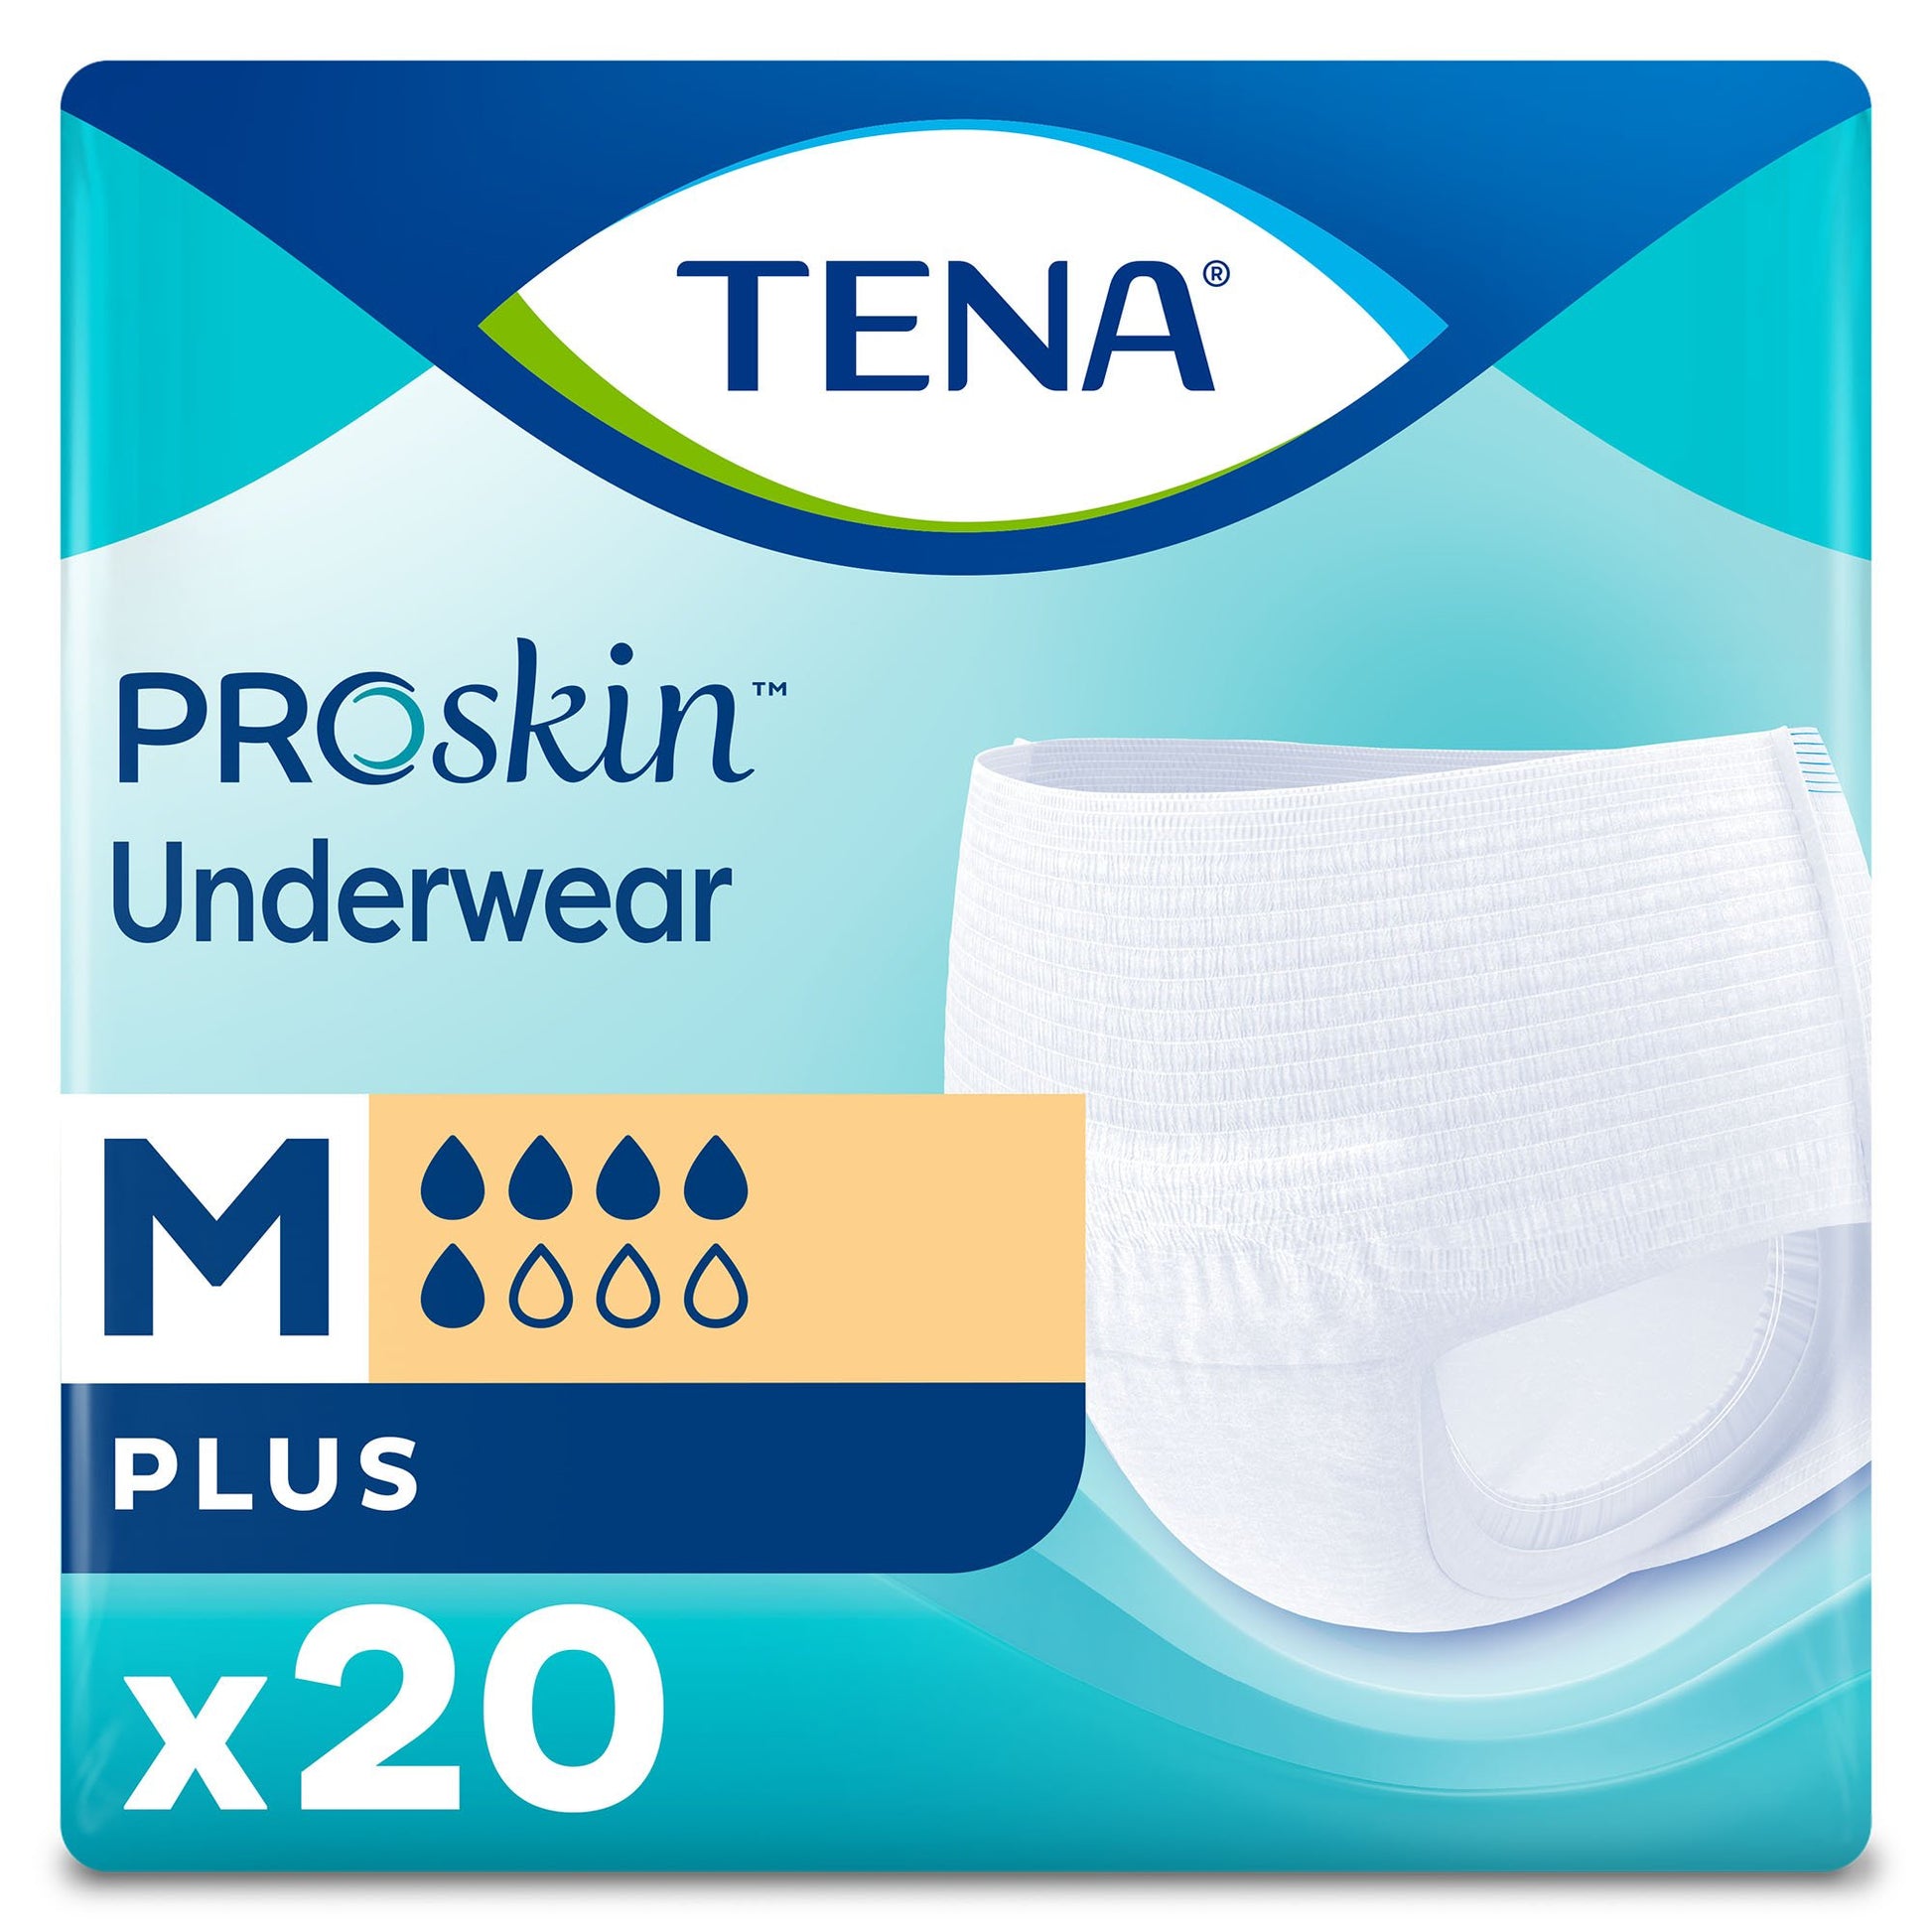 Buy Tena ProSkin Underwear For Women Online - Use FSA$